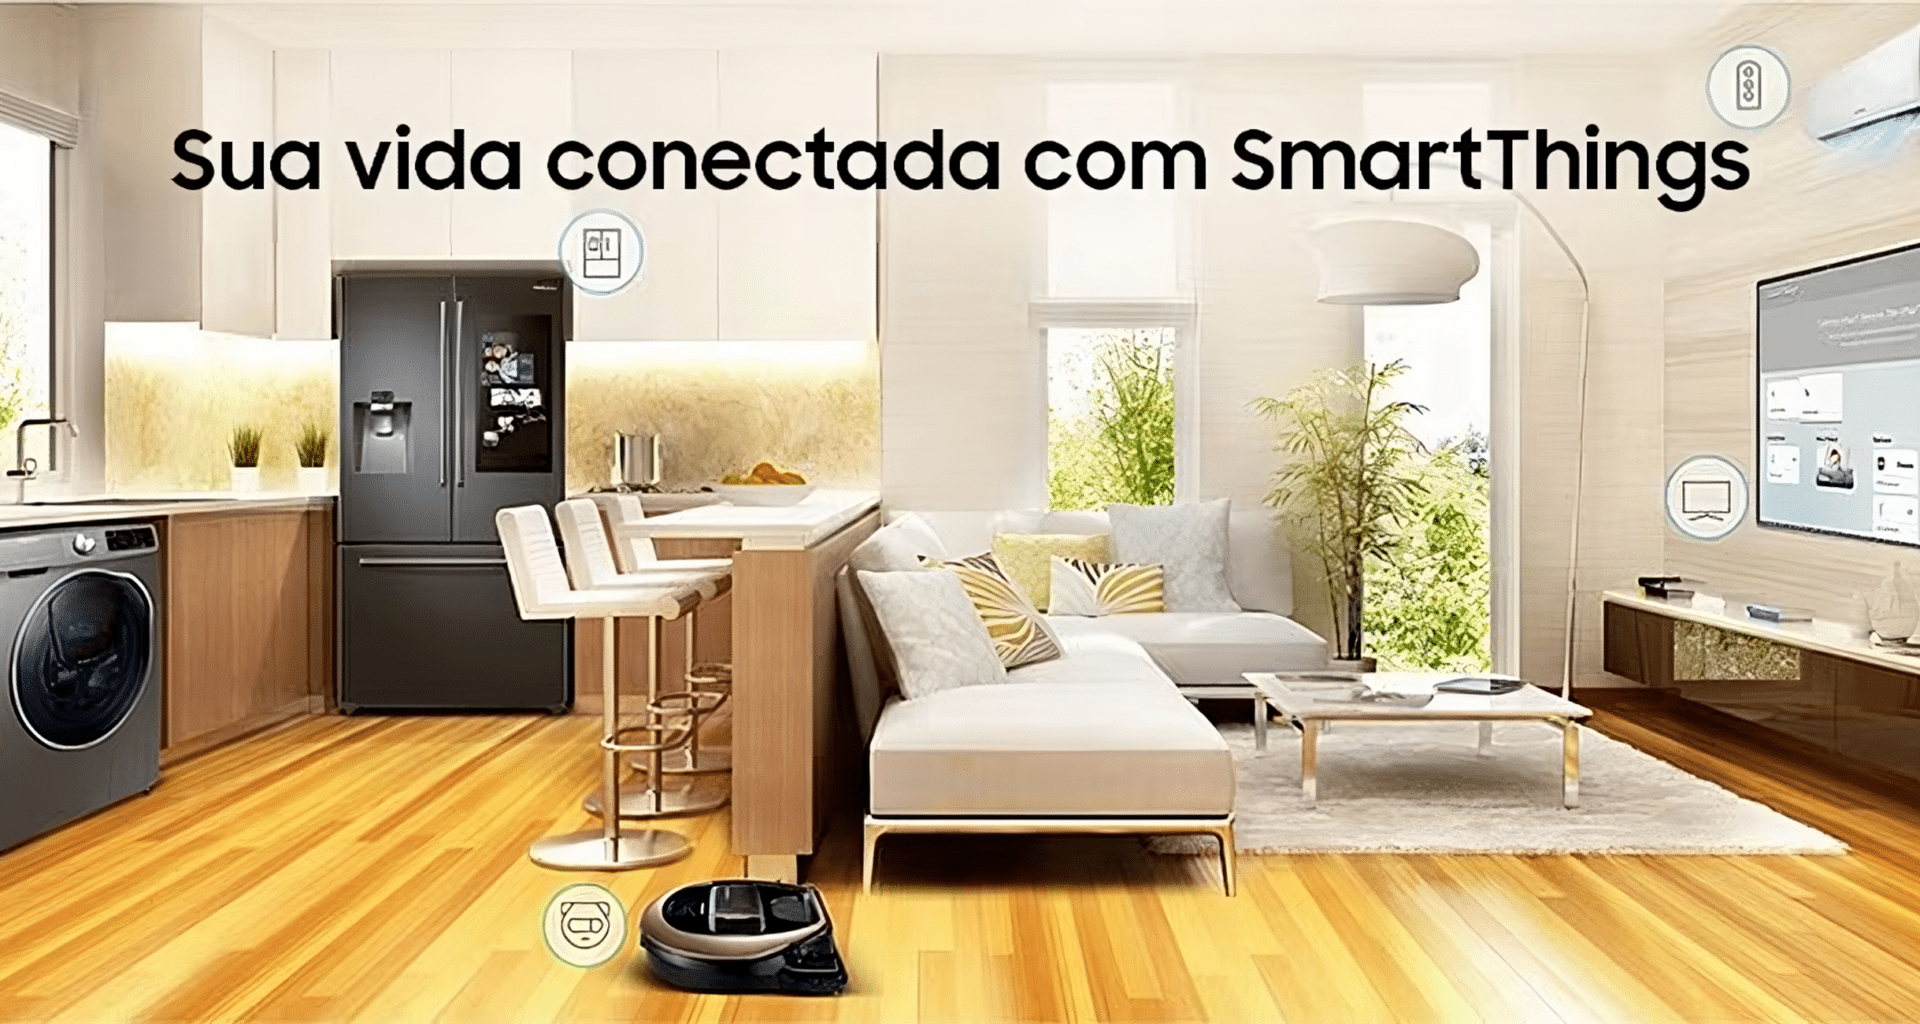 Casa inteligente samsung brasil é estreada para visitação em são paulo